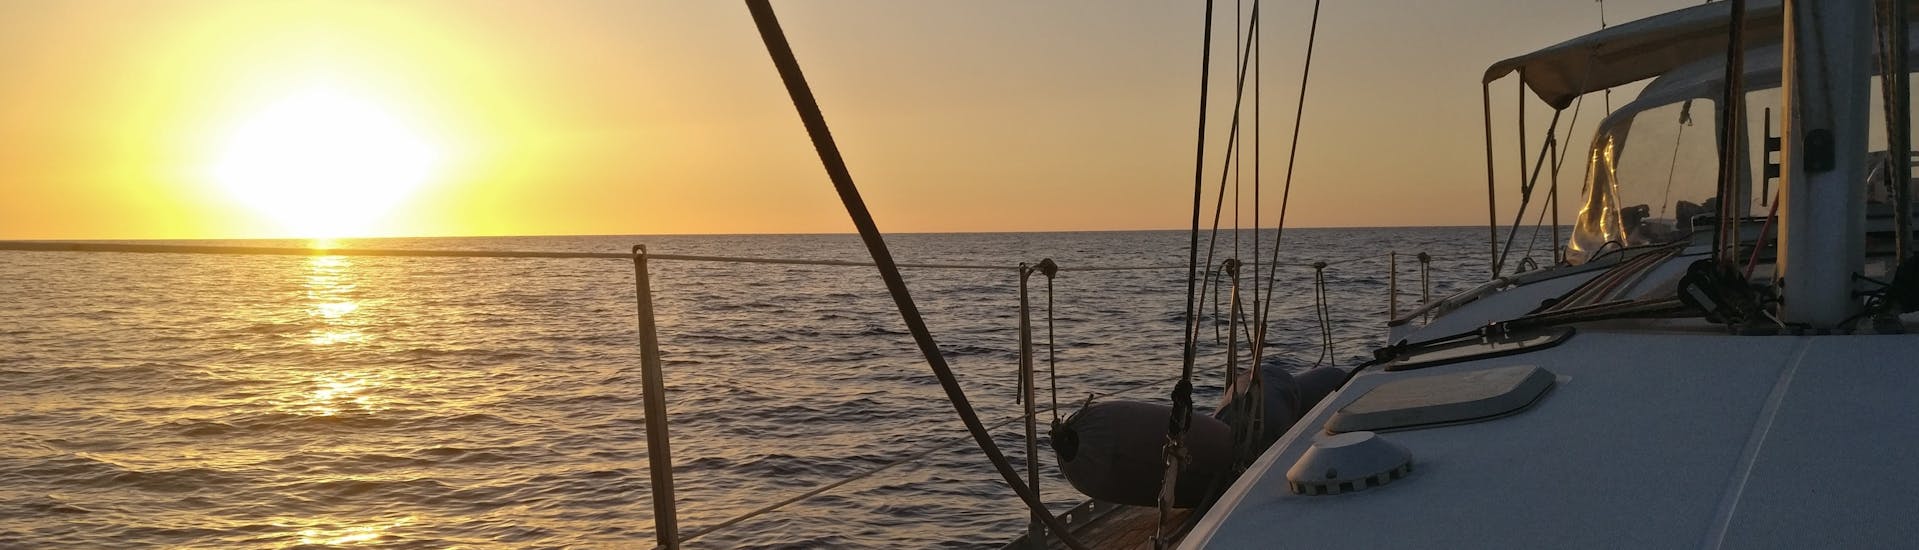 Sicht auf das Meer während des Sonnenuntergangs mit einem Boot von 40° Parallelo Leuca.